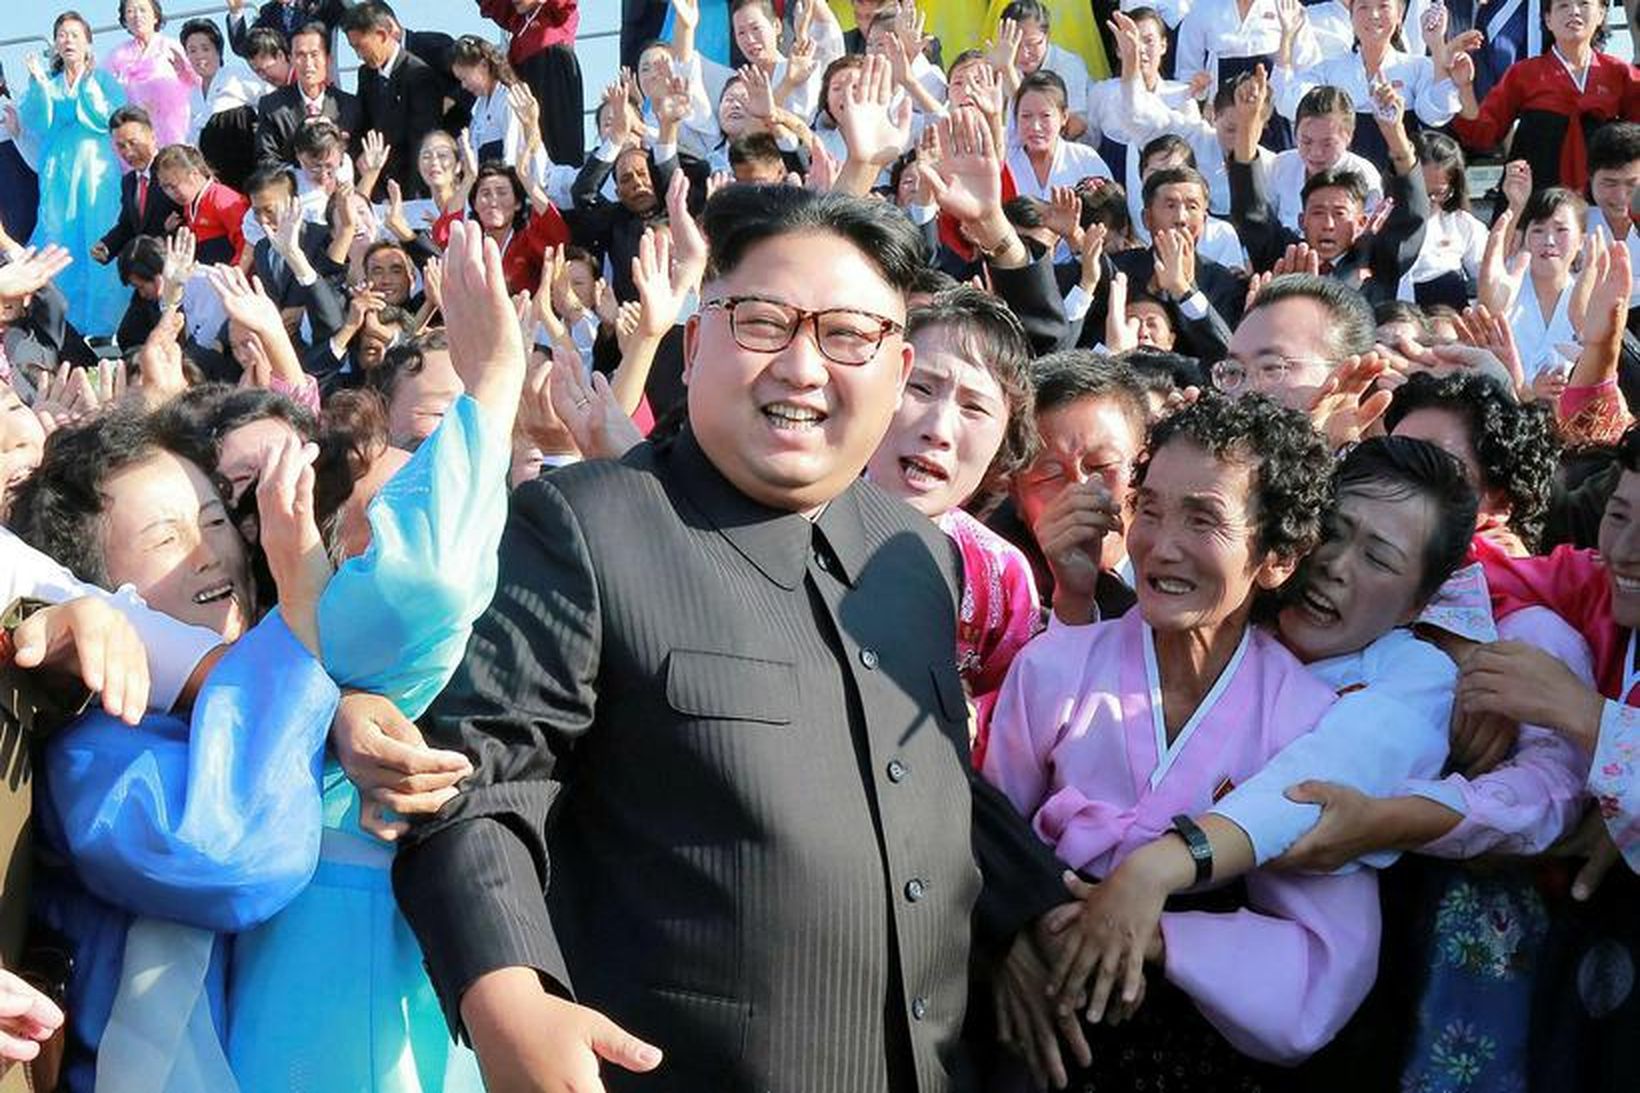 Kim Jong-un leiðtogi Norður-Kóreu með hópi norður-kóreskra kennara. Norður-Kórea hyggst …